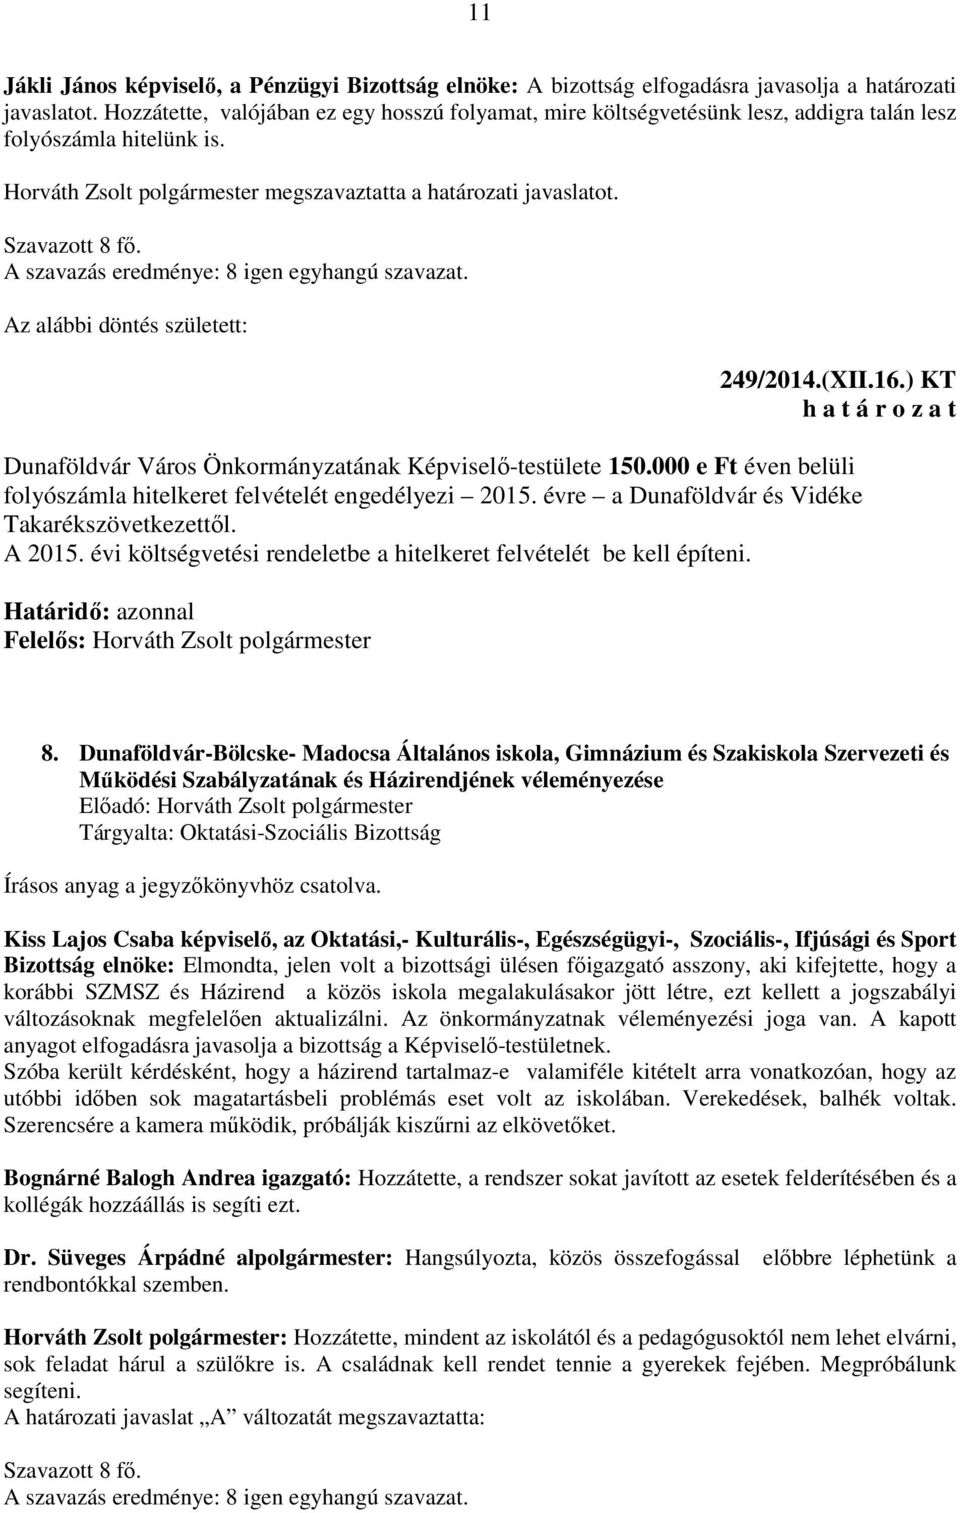 Az alábbi döntés született: 249/2014.(XII.16.) KT Dunaföldvár Város Önkormányzatának Képviselő-testülete 150.000 e Ft éven belüli folyószámla hitelkeret felvételét engedélyezi 2015.